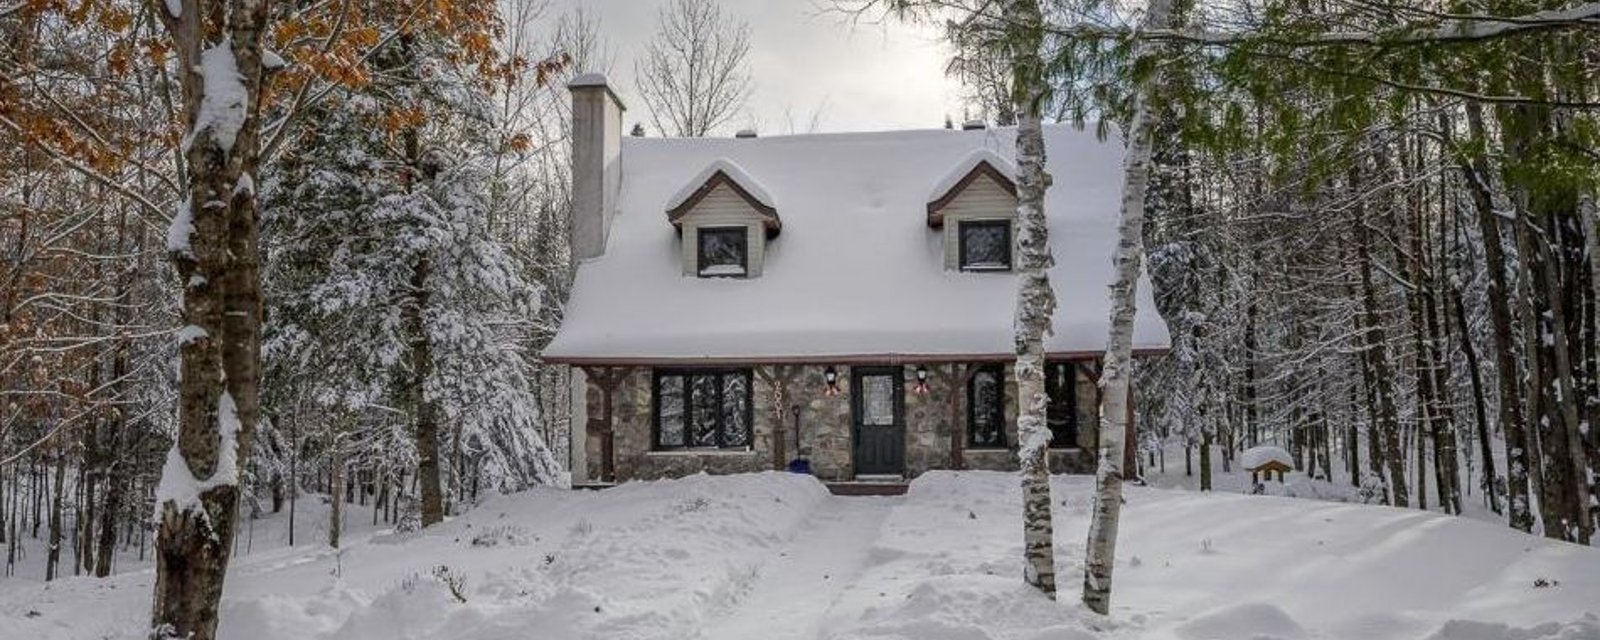 Charmante maison canadienne rénovée sise sur un lot boisé intime de plus d'un acre